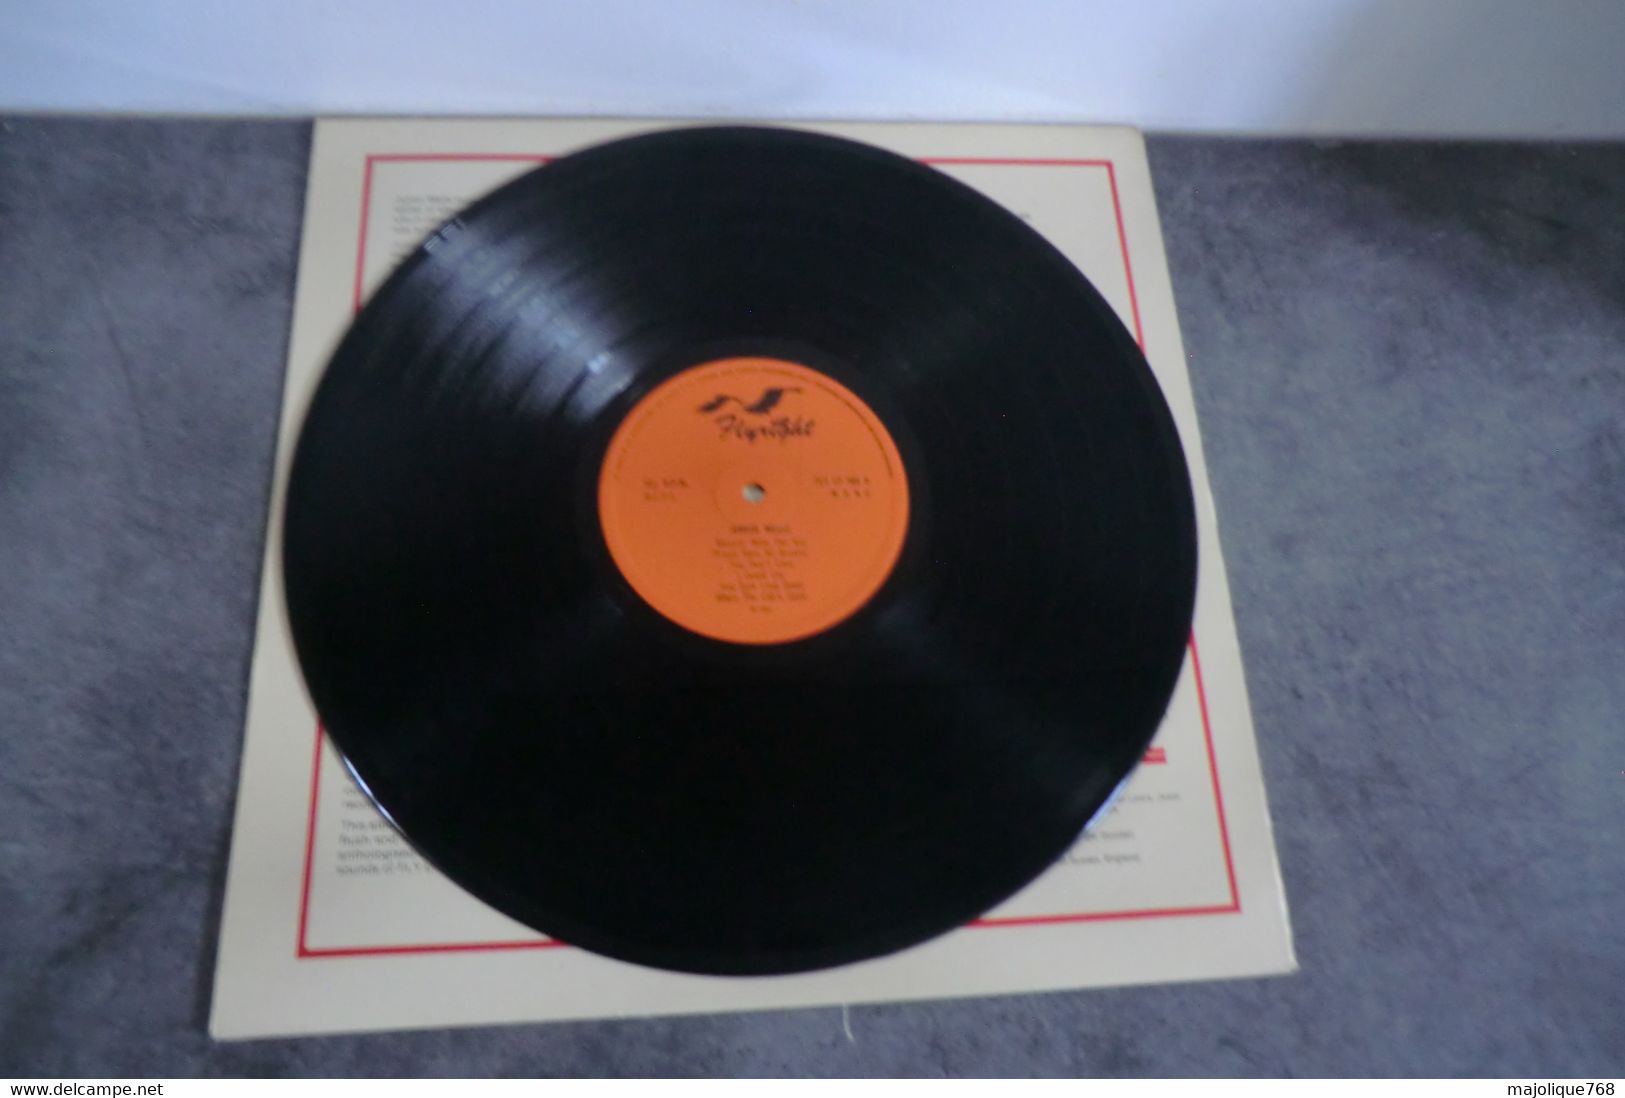 Disque De Junior Wells - Universal Rock - Flyright FLY 588 -  UK Sortie: 1981  - - Blues